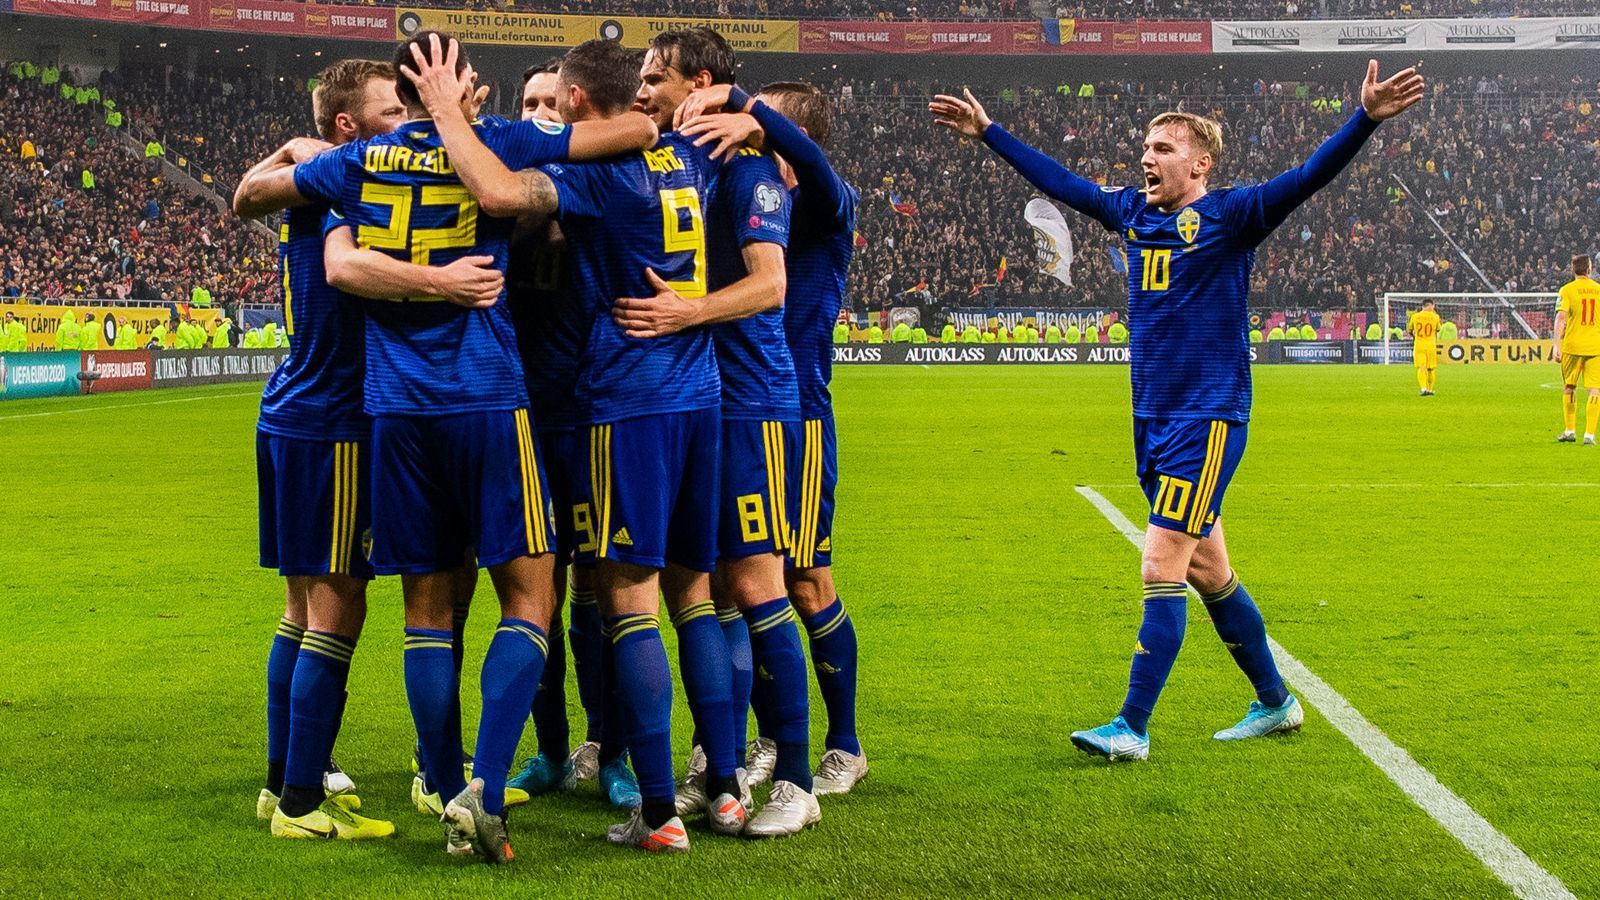 
                <strong>Schweden</strong><br>
                Platz 2 in Gruppe F mit Spanien, Rumänien, Norwegen, Färöer und Malta
              